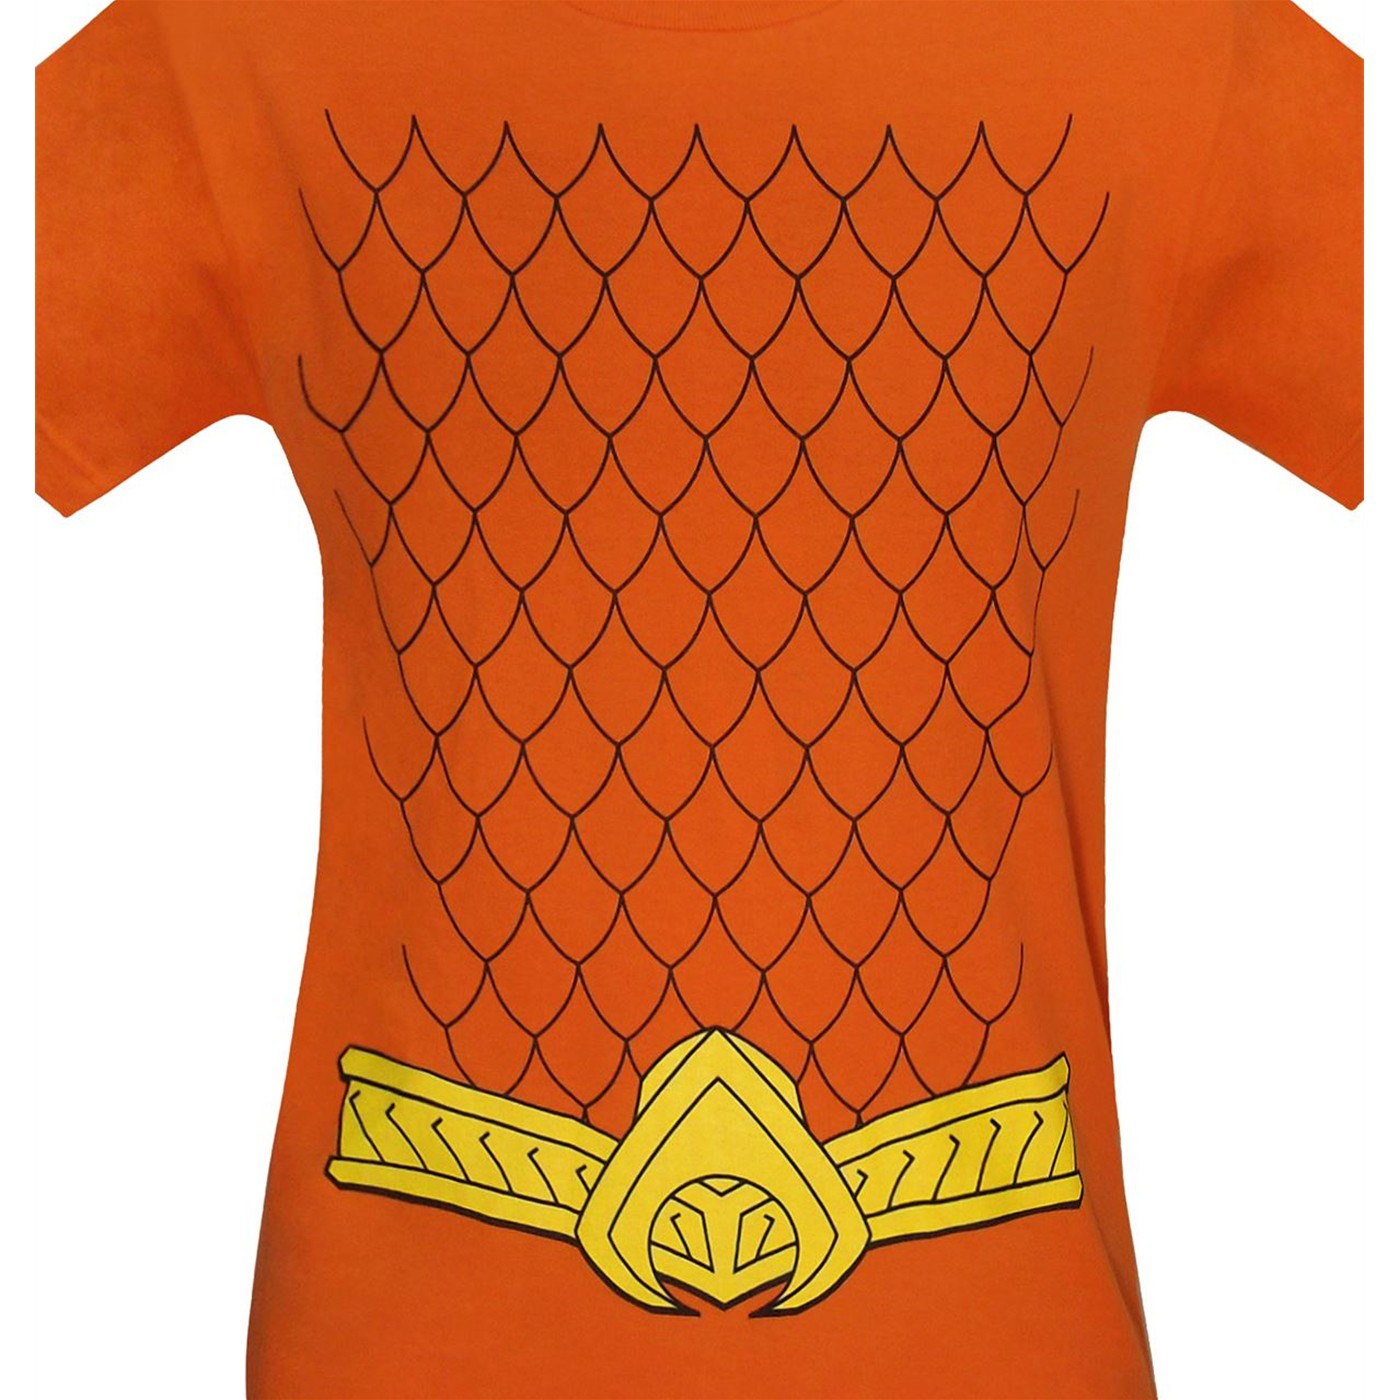 Aquaman New 52 Costume T-Shirt